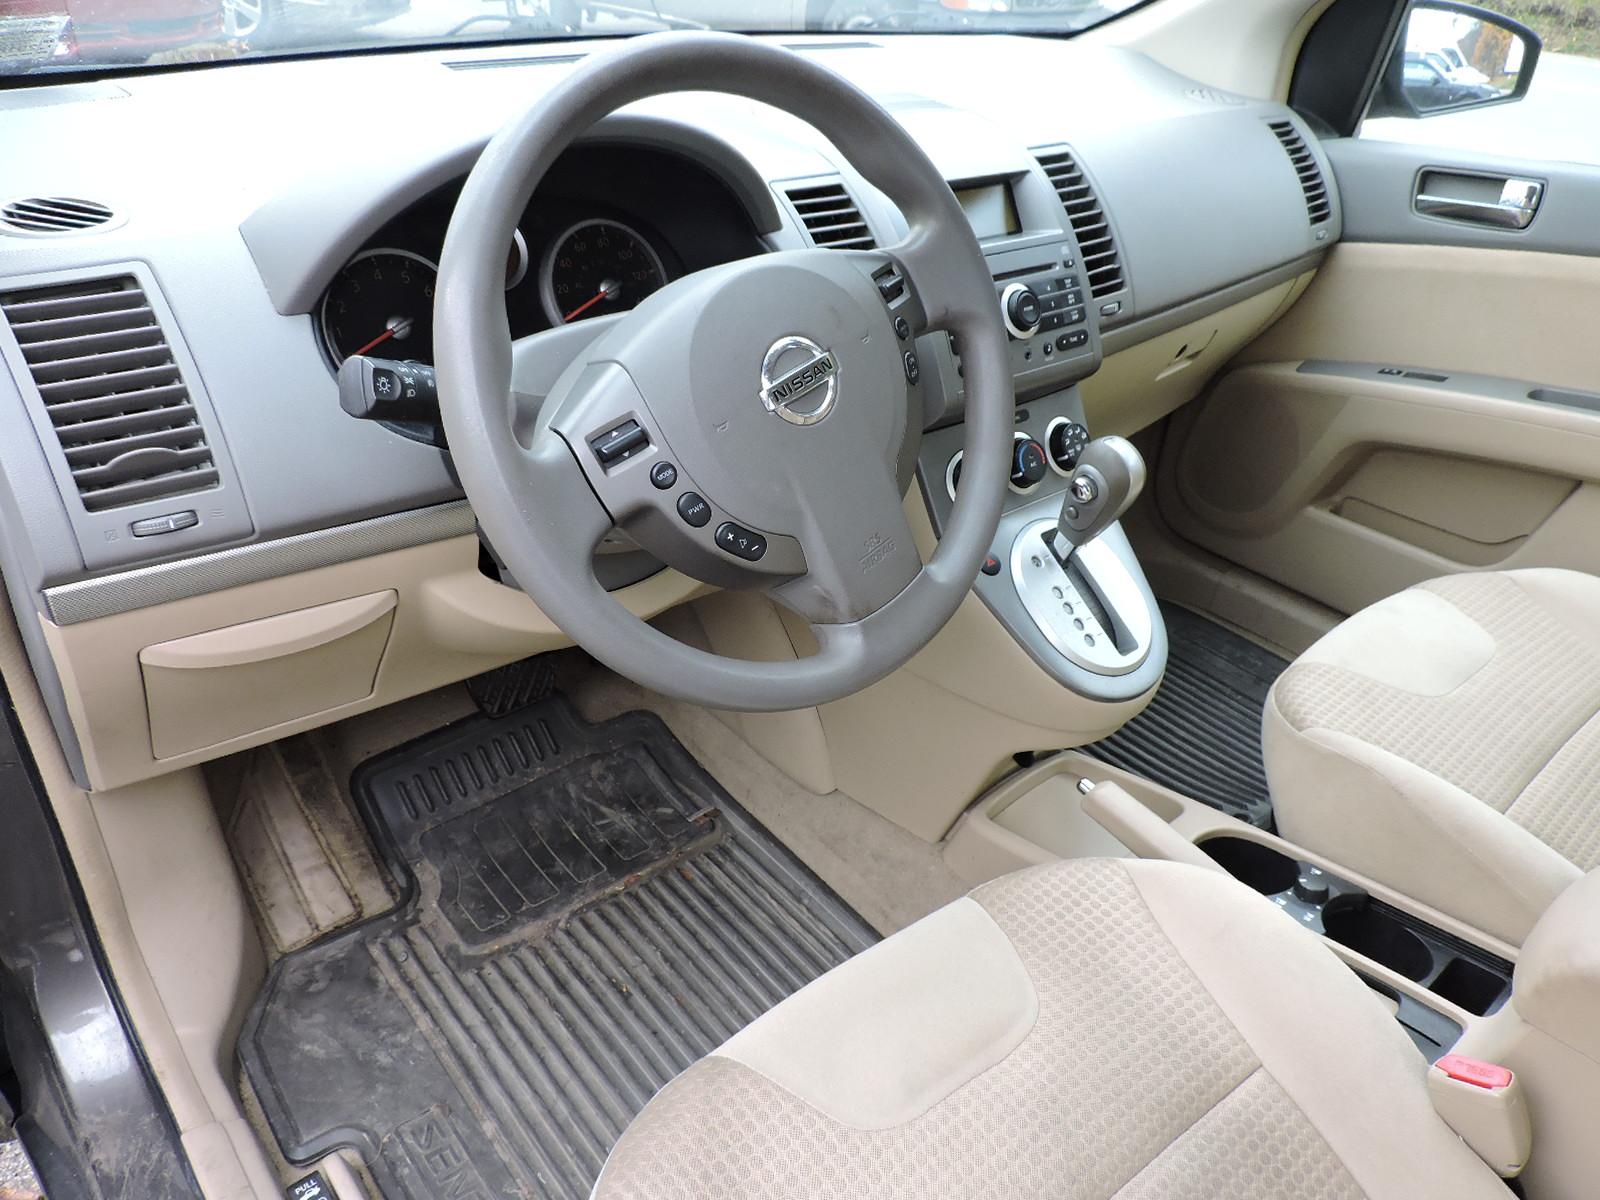 2008 Nissan Sentra Sedan - NY Inspected